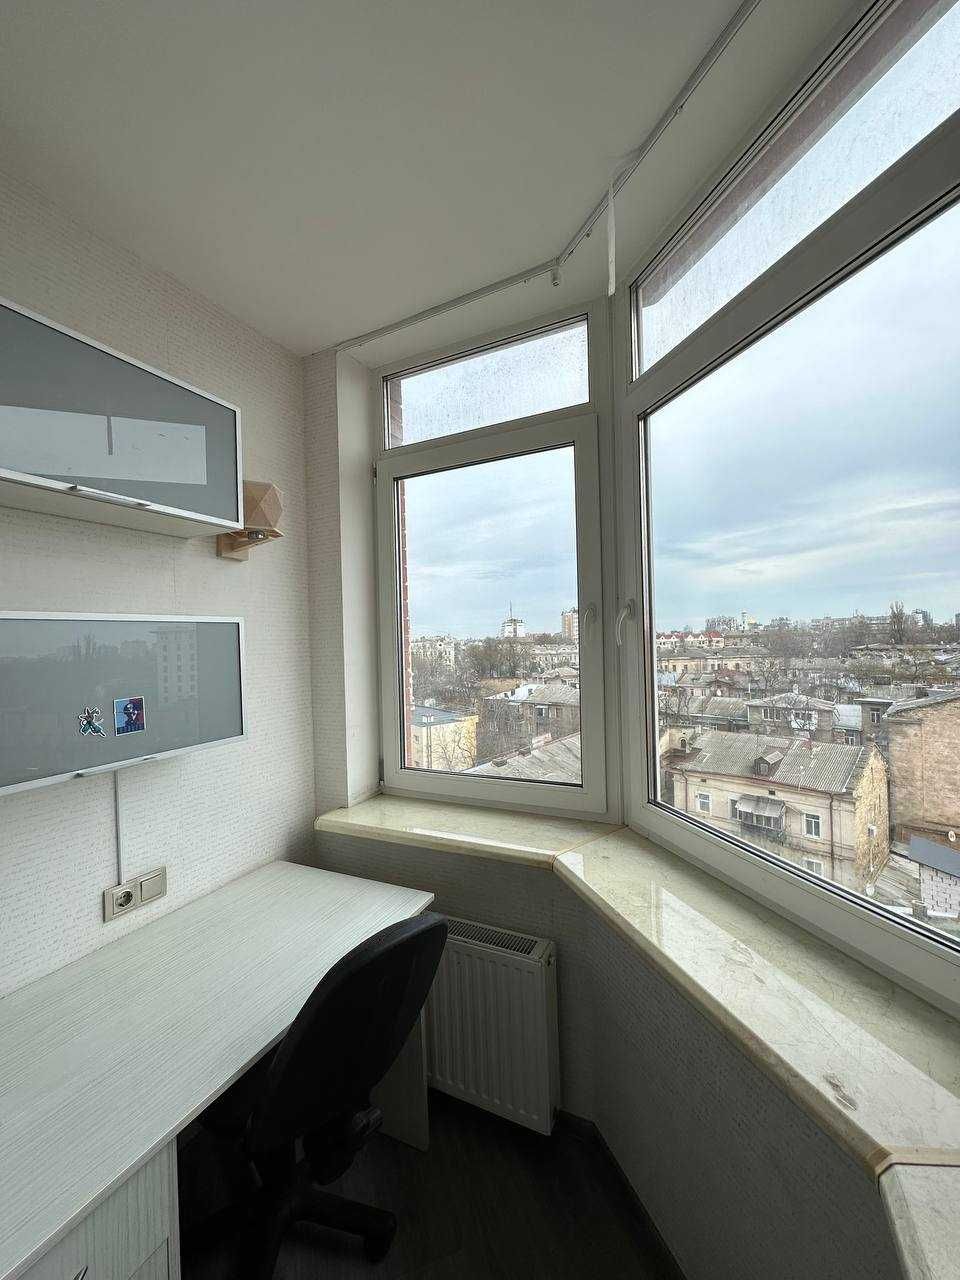 Продам квартиру 3-комнатную на Разумовского, дом СК Стикон.